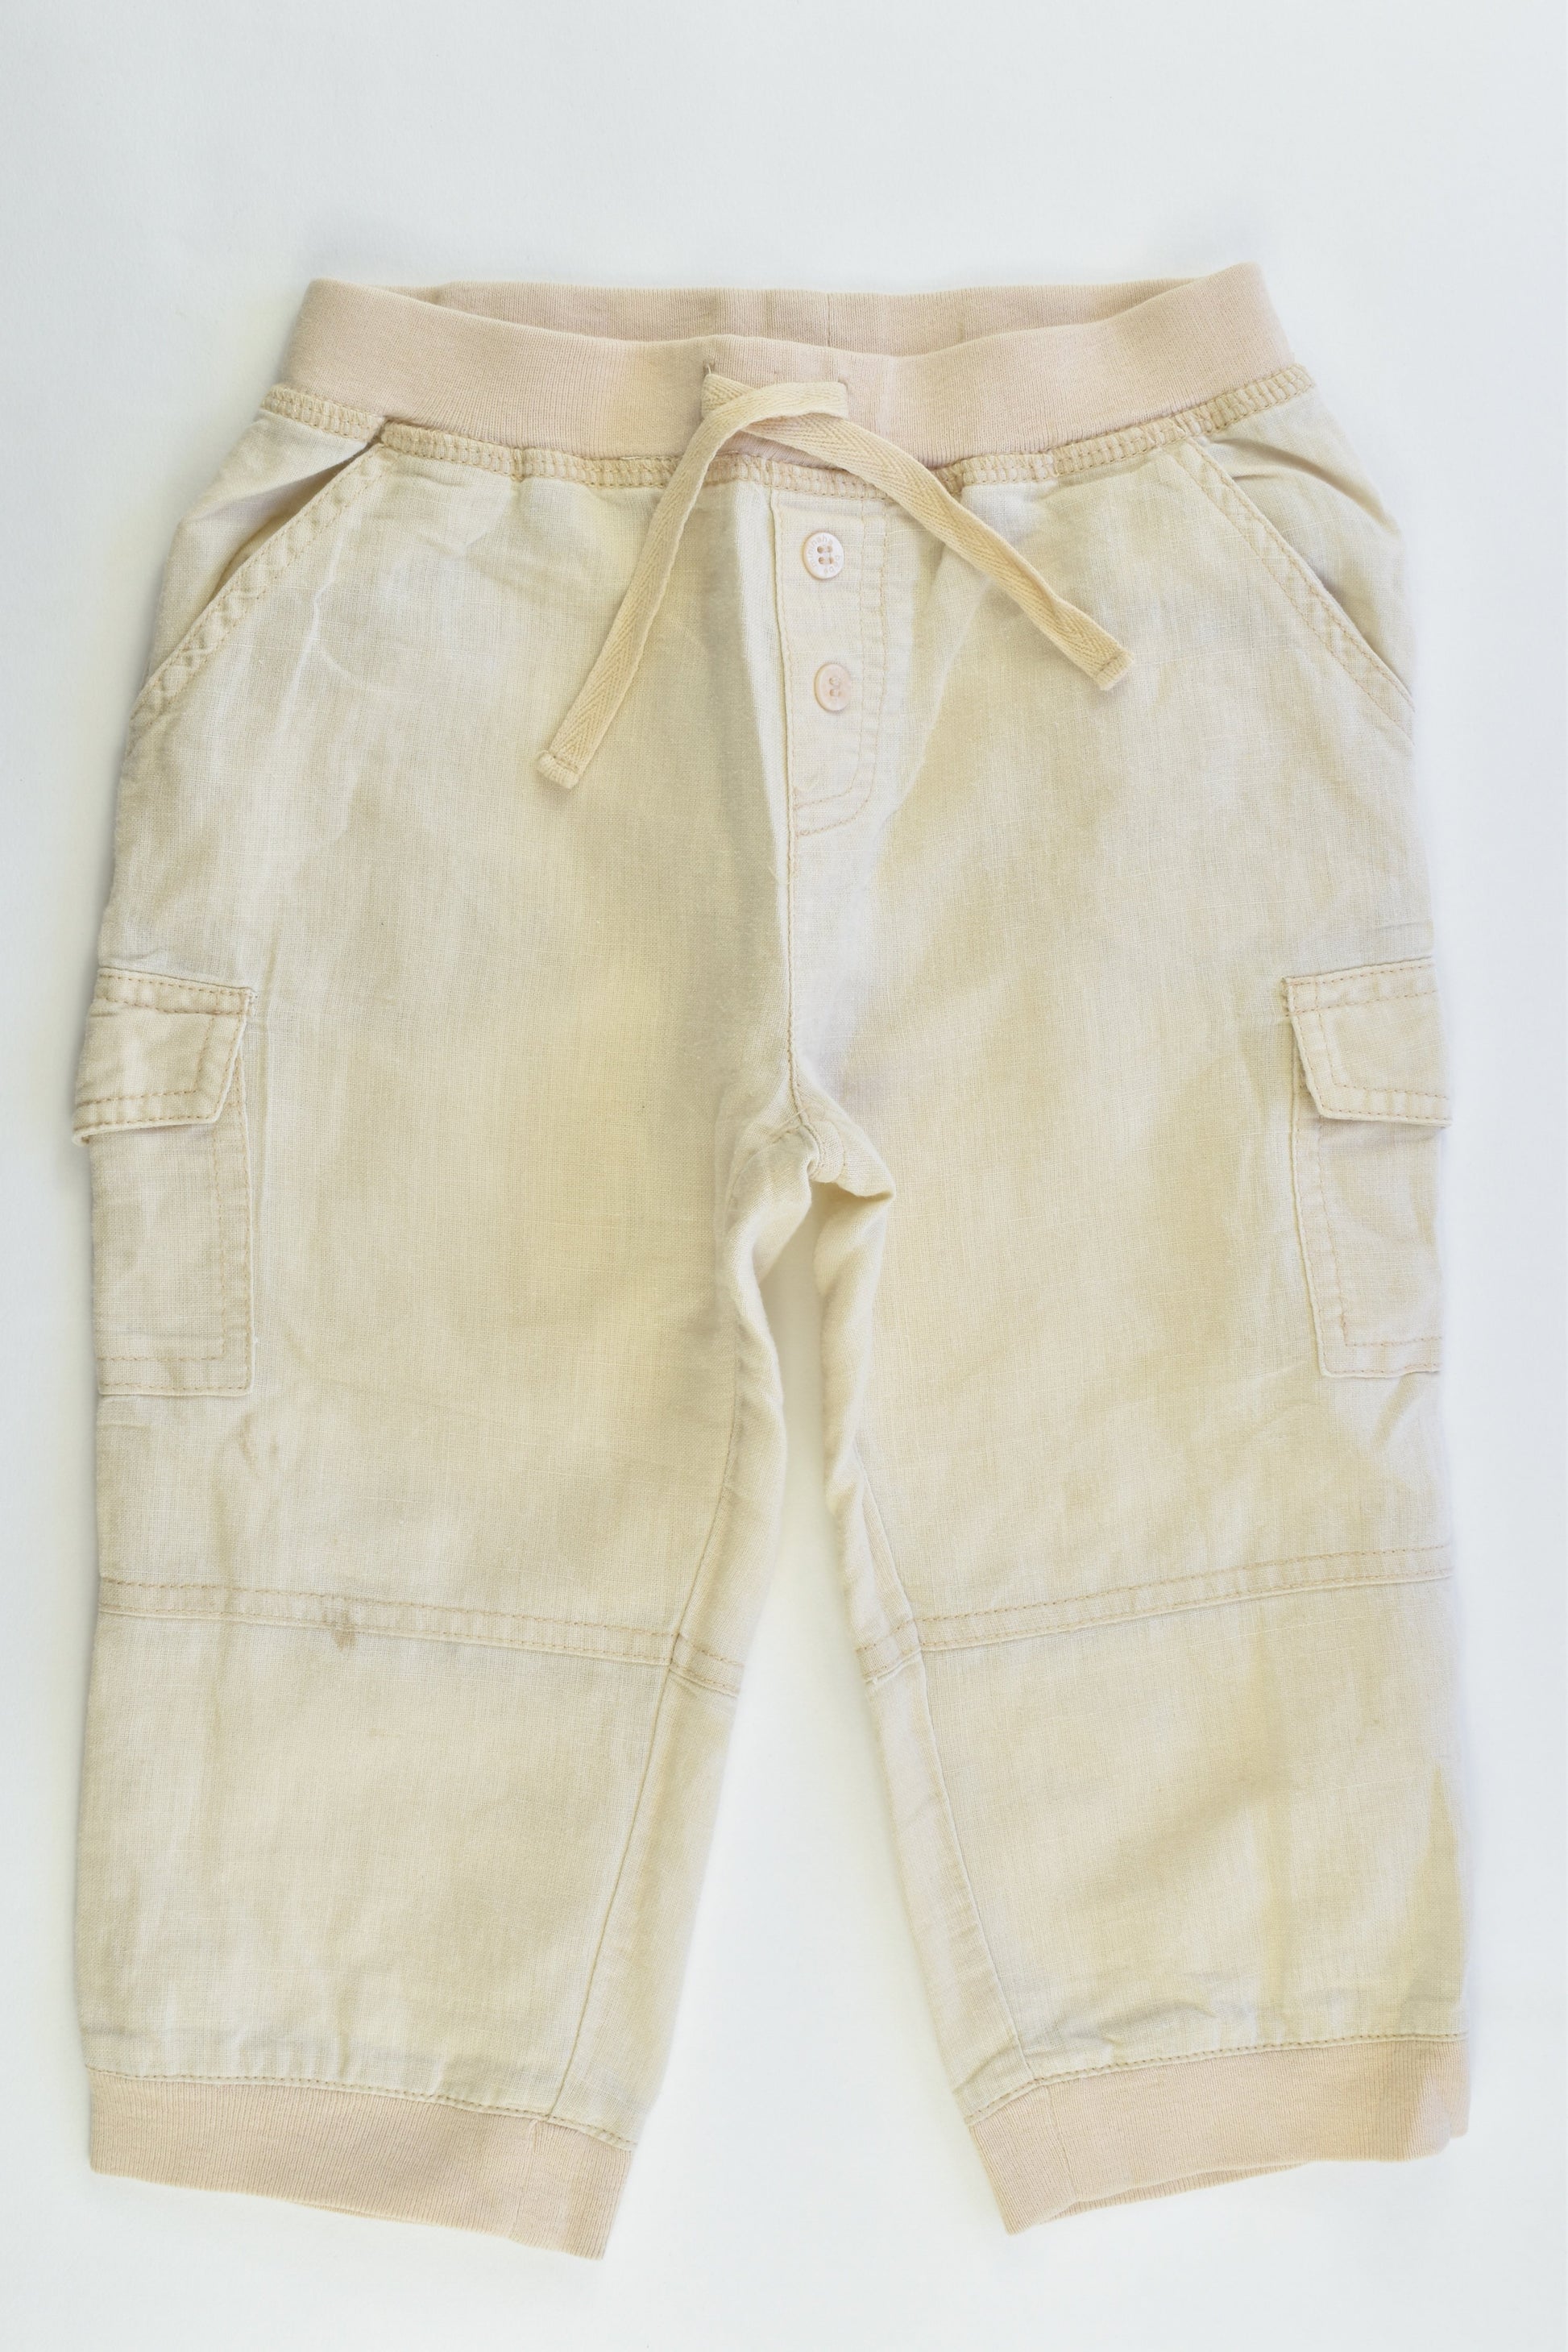 Bébé by Minihaha Size 18 months Linen/Cotton Pants